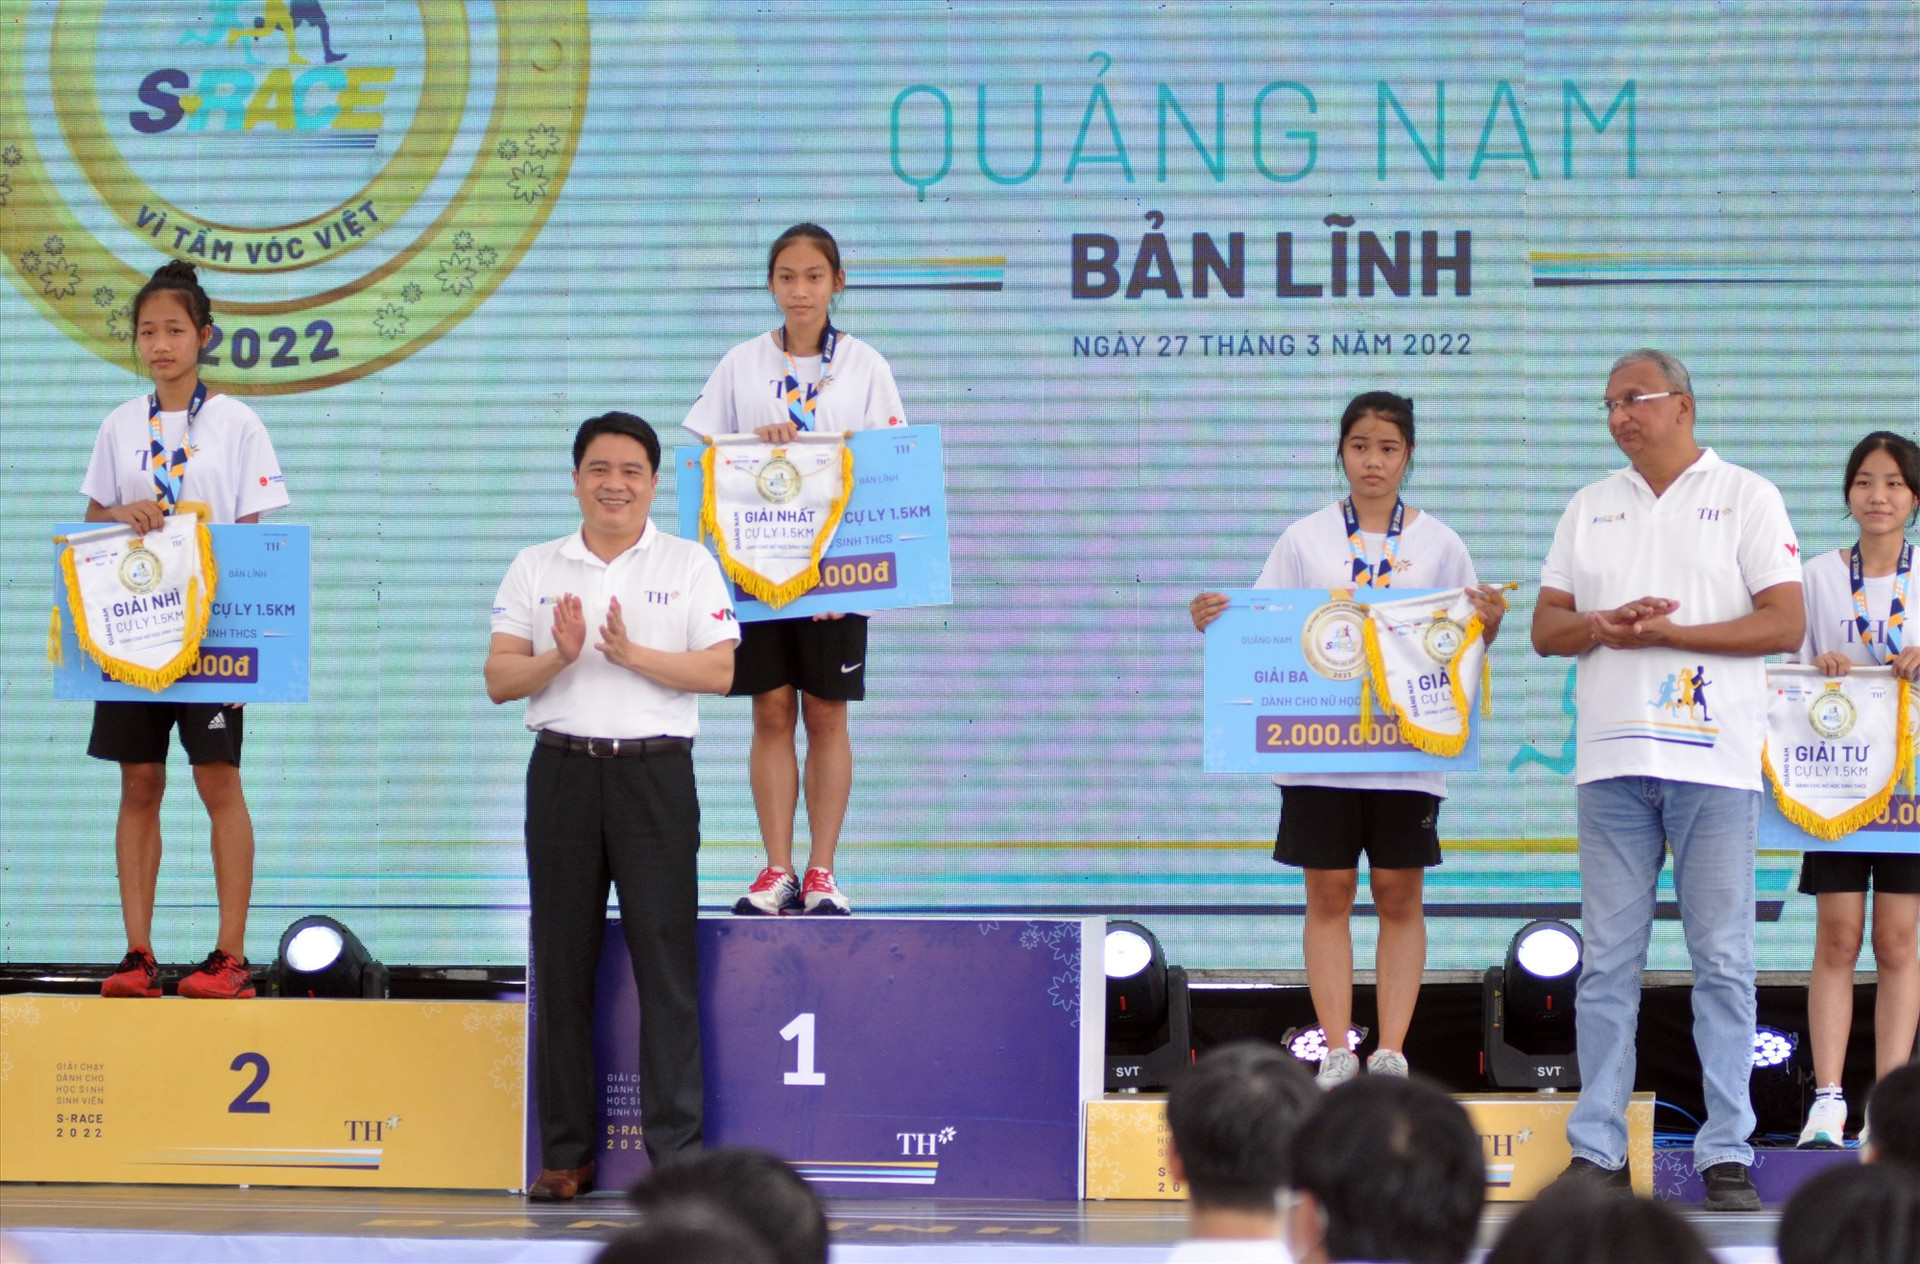 Phó Chủ tịch UBND tỉnh Trần Văn Tân trao thưởng cho các học sinh, sinh viên đoạt giải tại S-Race Quảng Nam 2022. Ảnh: A.S